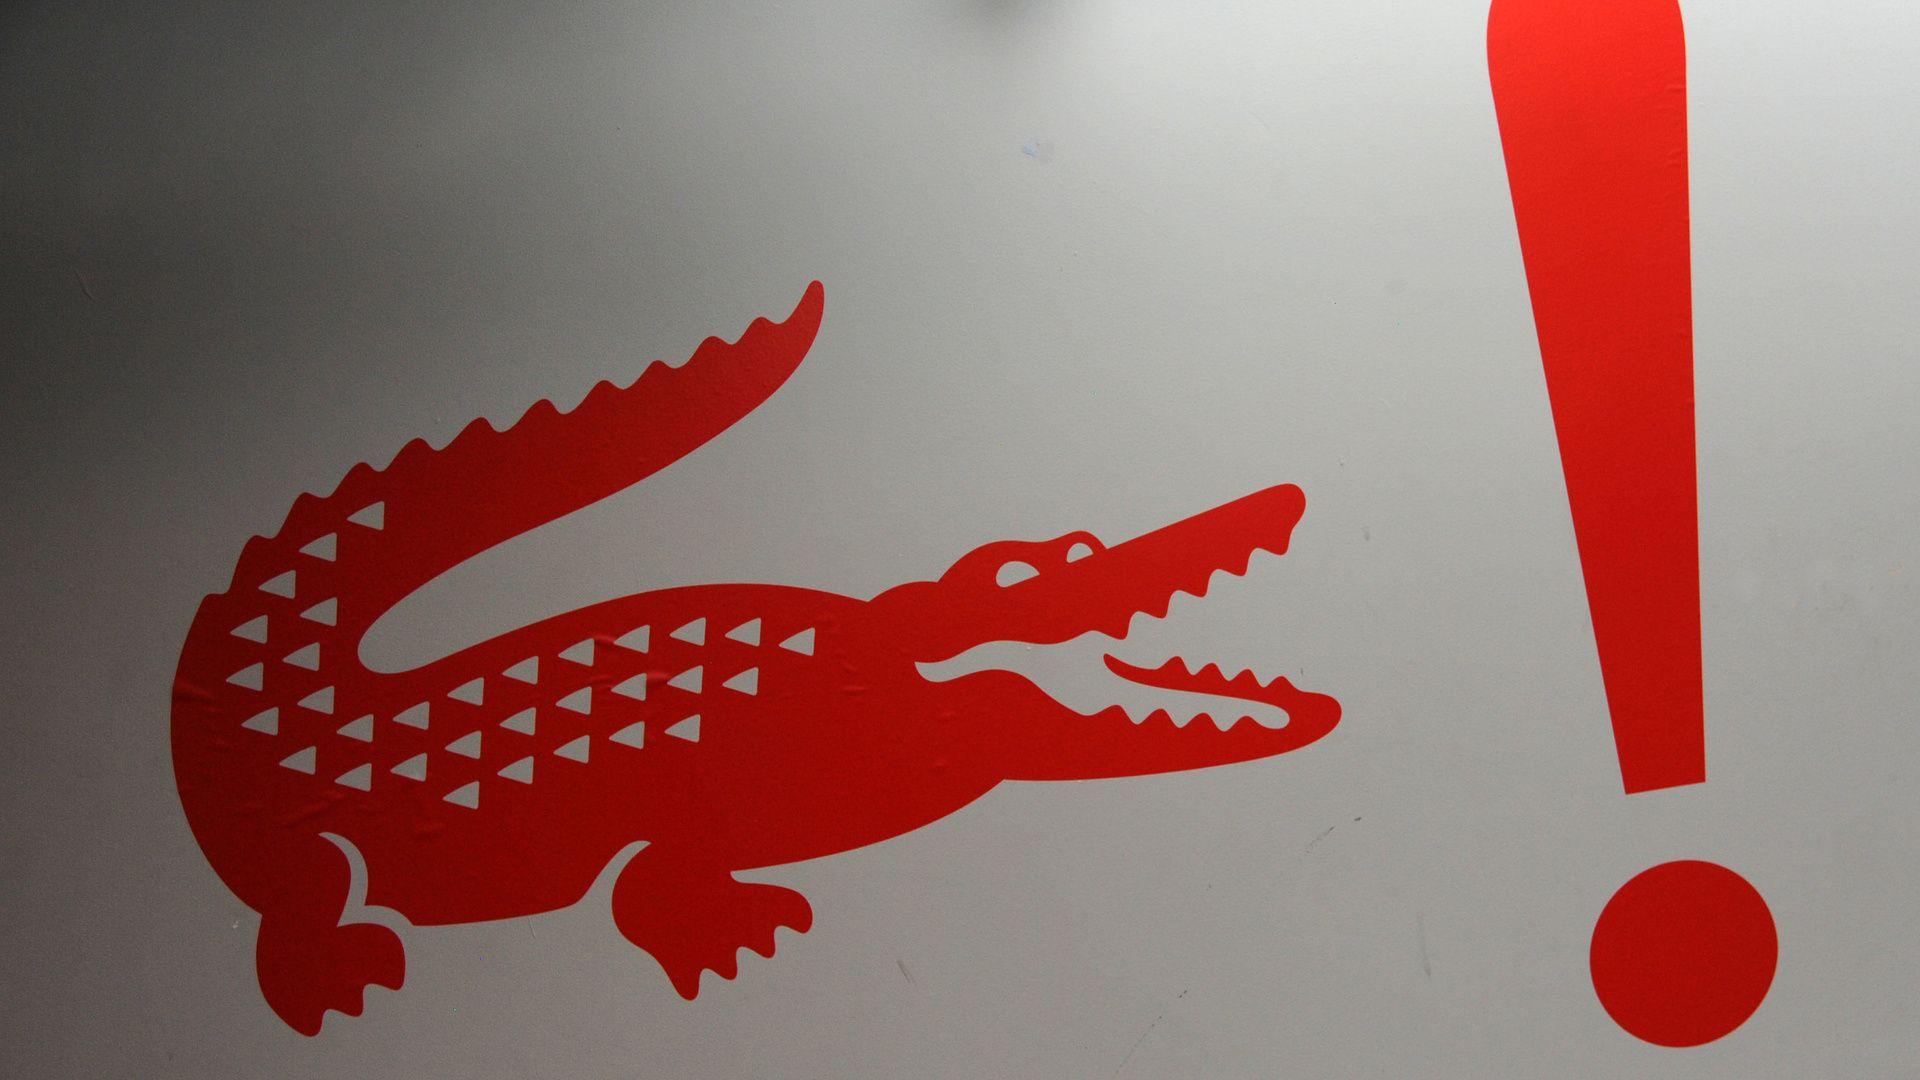 Lacoste, Lacoste Crocodile Logo Wallpaper and Picture